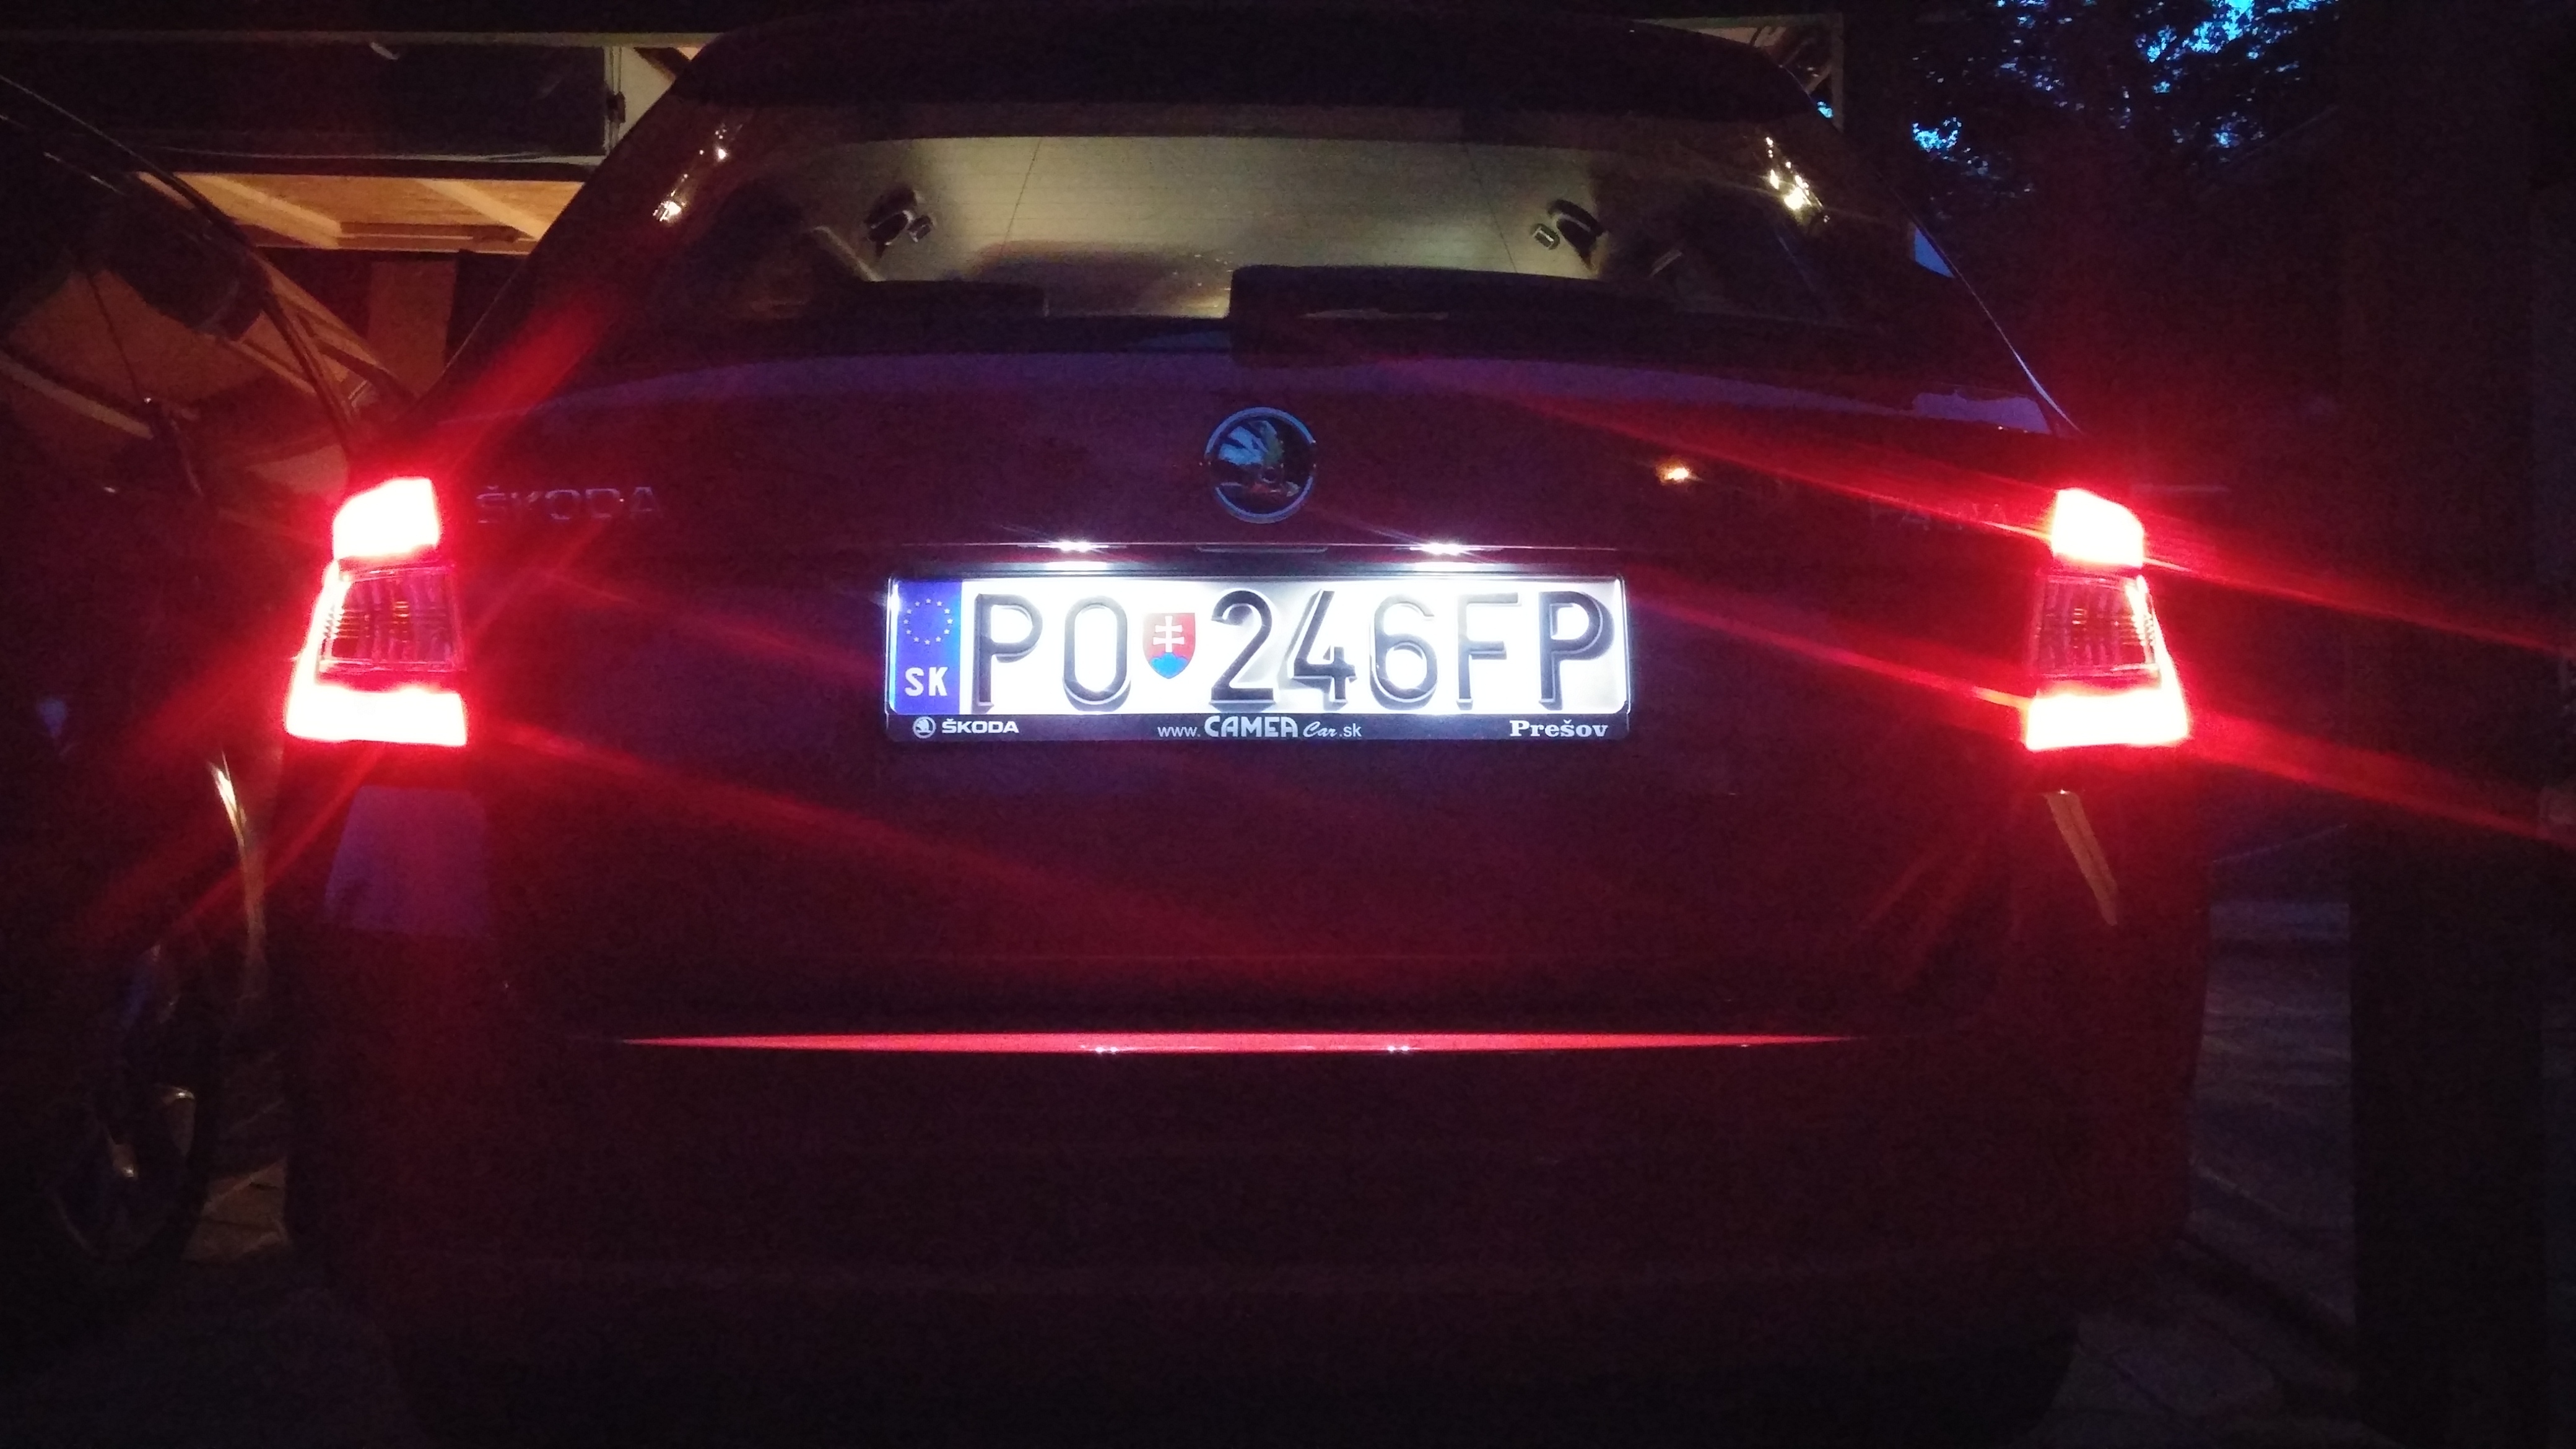 LED license plate light (000052110)